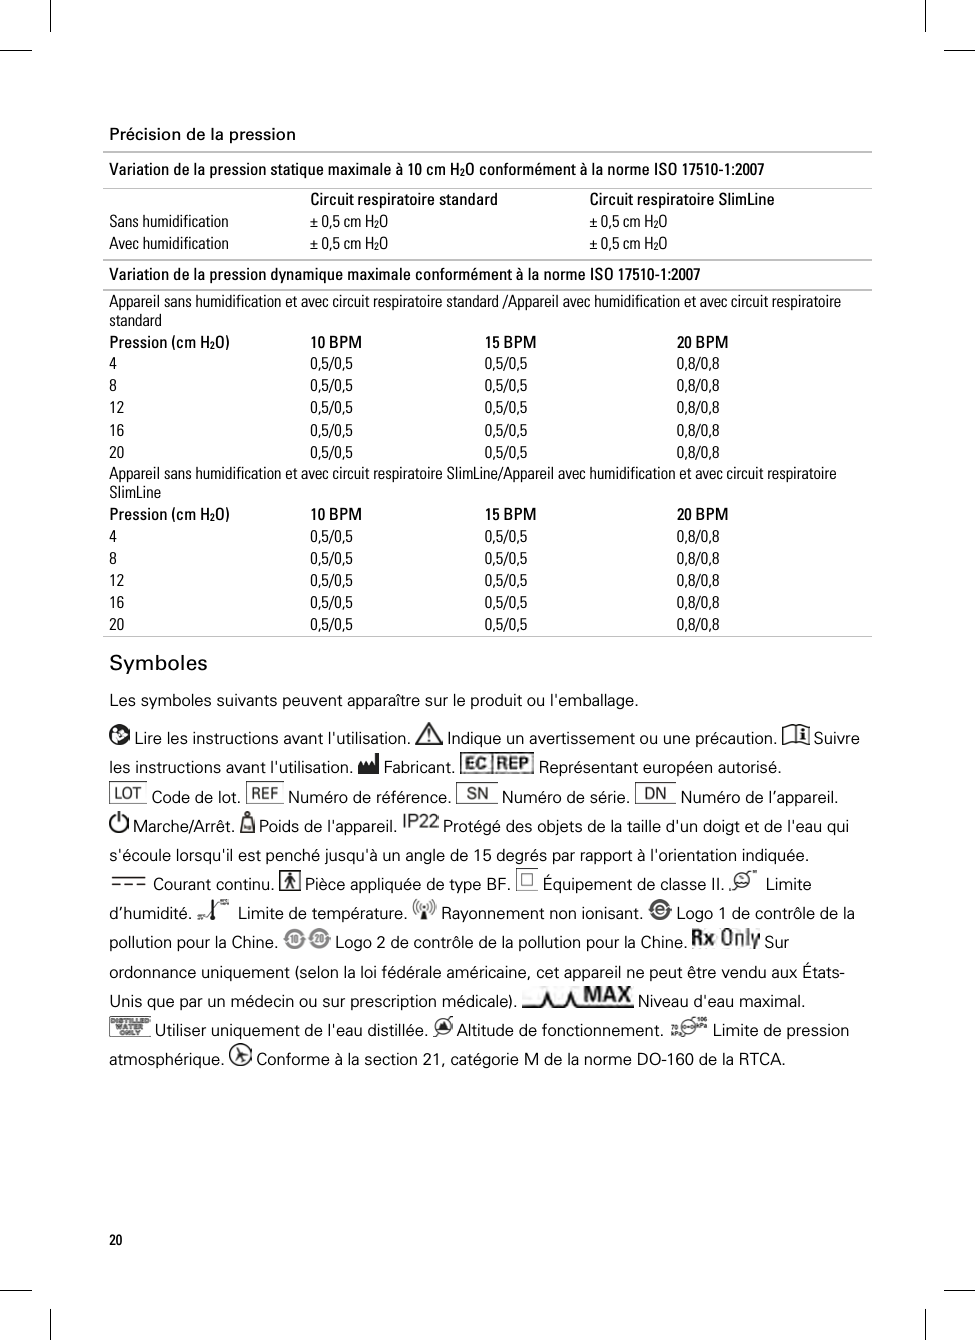 20  Précision de la pression Variation de la pression statique maximale à 10 cm H2O conformément à la norme ISO 17510-1:2007  Circuit respiratoire standard  Circuit respiratoire SlimLine Sans humidification  ± 0,5 cm H2O   ± 0,5 cm H2O  Avec humidification  ± 0,5 cm H2O   ± 0,5 cm H2O Variation de la pression dynamique maximale conformément à la norme ISO 17510-1:2007 Appareil sans humidification et avec circuit respiratoire standard /Appareil avec humidification et avec circuit respiratoire standard Pression (cm H2O)  10 BPM  15 BPM  20 BPM 4 0,5/0,5 0,5/0,5 0,8/0,8 8 0,5/0,5 0,5/0,5 0,8/0,8 12 0,5/0,5 0,5/0,5 0,8/0,8 16 0,5/0,5 0,5/0,5 0,8/0,8 20 0,5/0,5 0,5/0,5 0,8/0,8 Appareil sans humidification et avec circuit respiratoire SlimLine/Appareil avec humidification et avec circuit respiratoire SlimLine Pression (cm H2O)  10 BPM  15 BPM  20 BPM 4 0,5/0,5 0,5/0,5 0,8/0,8 8 0,5/0,5 0,5/0,5 0,8/0,8 12 0,5/0,5 0,5/0,5 0,8/0,8 16 0,5/0,5 0,5/0,5 0,8/0,8 20 0,5/0,5 0,5/0,5 0,8/0,8   Symboles Les symboles suivants peuvent apparaître sur le produit ou l&apos;emballage.   Lire les instructions avant l&apos;utilisation.   Indique un avertissement ou une précaution.   Suivre les instructions avant l&apos;utilisation.   Fabricant.   Représentant européen autorisé.  Code de lot.   Numéro de référence.   Numéro de série.   Numéro de l’appareil.  Marche/Arrêt.   Poids de l&apos;appareil.   Protégé des objets de la taille d&apos;un doigt et de l&apos;eau qui s&apos;écoule lorsqu&apos;il est penché jusqu&apos;à un angle de 15 degrés par rapport à l&apos;orientation indiquée.  Courant continu.   Pièce appliquée de type BF.   Équipement de classe II.    Limite d’humidité.    Limite de température.   Rayonnement non ionisant.   Logo 1 de contrôle de la pollution pour la Chine.   Logo 2 de contrôle de la pollution pour la Chine.   Sur ordonnance uniquement (selon la loi fédérale américaine, cet appareil ne peut être vendu aux États-Unis que par un médecin ou sur prescription médicale).   Niveau d&apos;eau maximal.  Utiliser uniquement de l&apos;eau distillée.   Altitude de fonctionnement.   Limite de pression atmosphérique.   Conforme à la section 21, catégorie M de la norme DO-160 de la RTCA.  